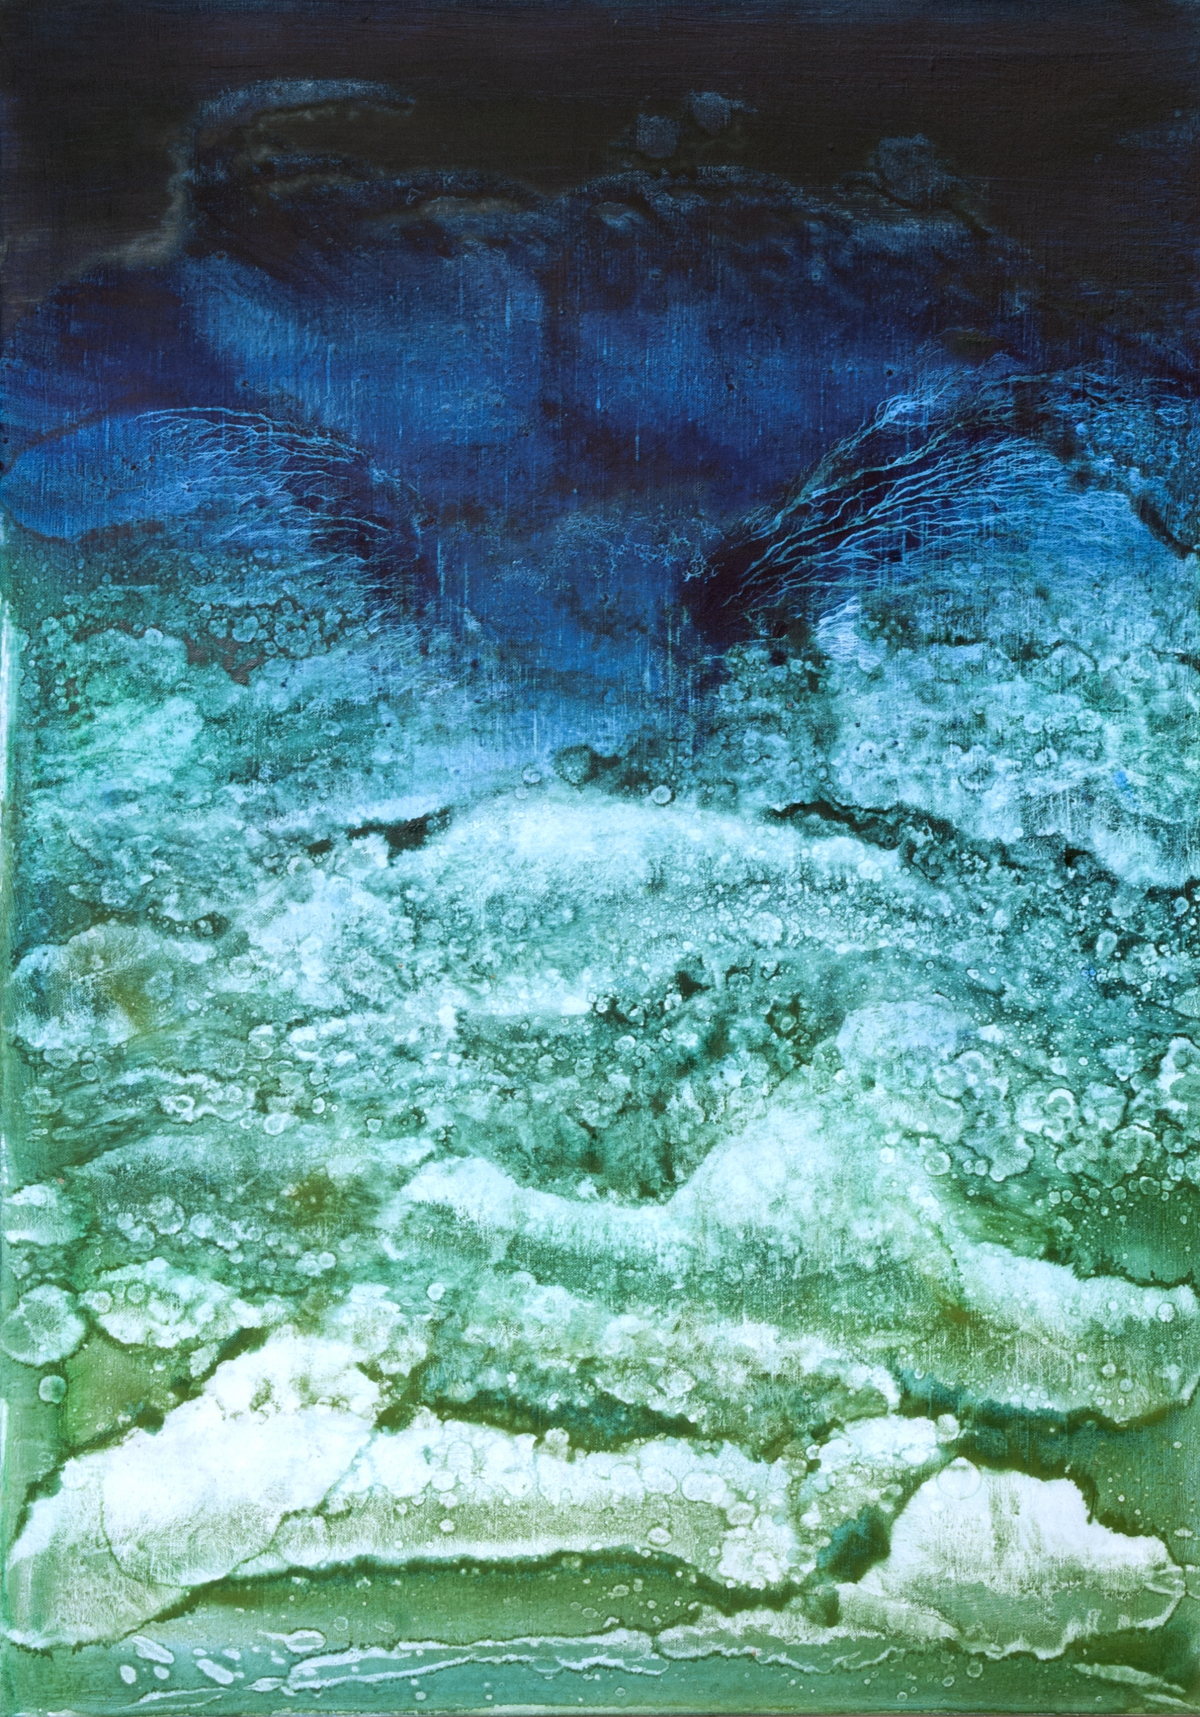 Moře – rozhovor větru s mořem (C. Debussy), 2012, olej, plátno, 100x100 cm